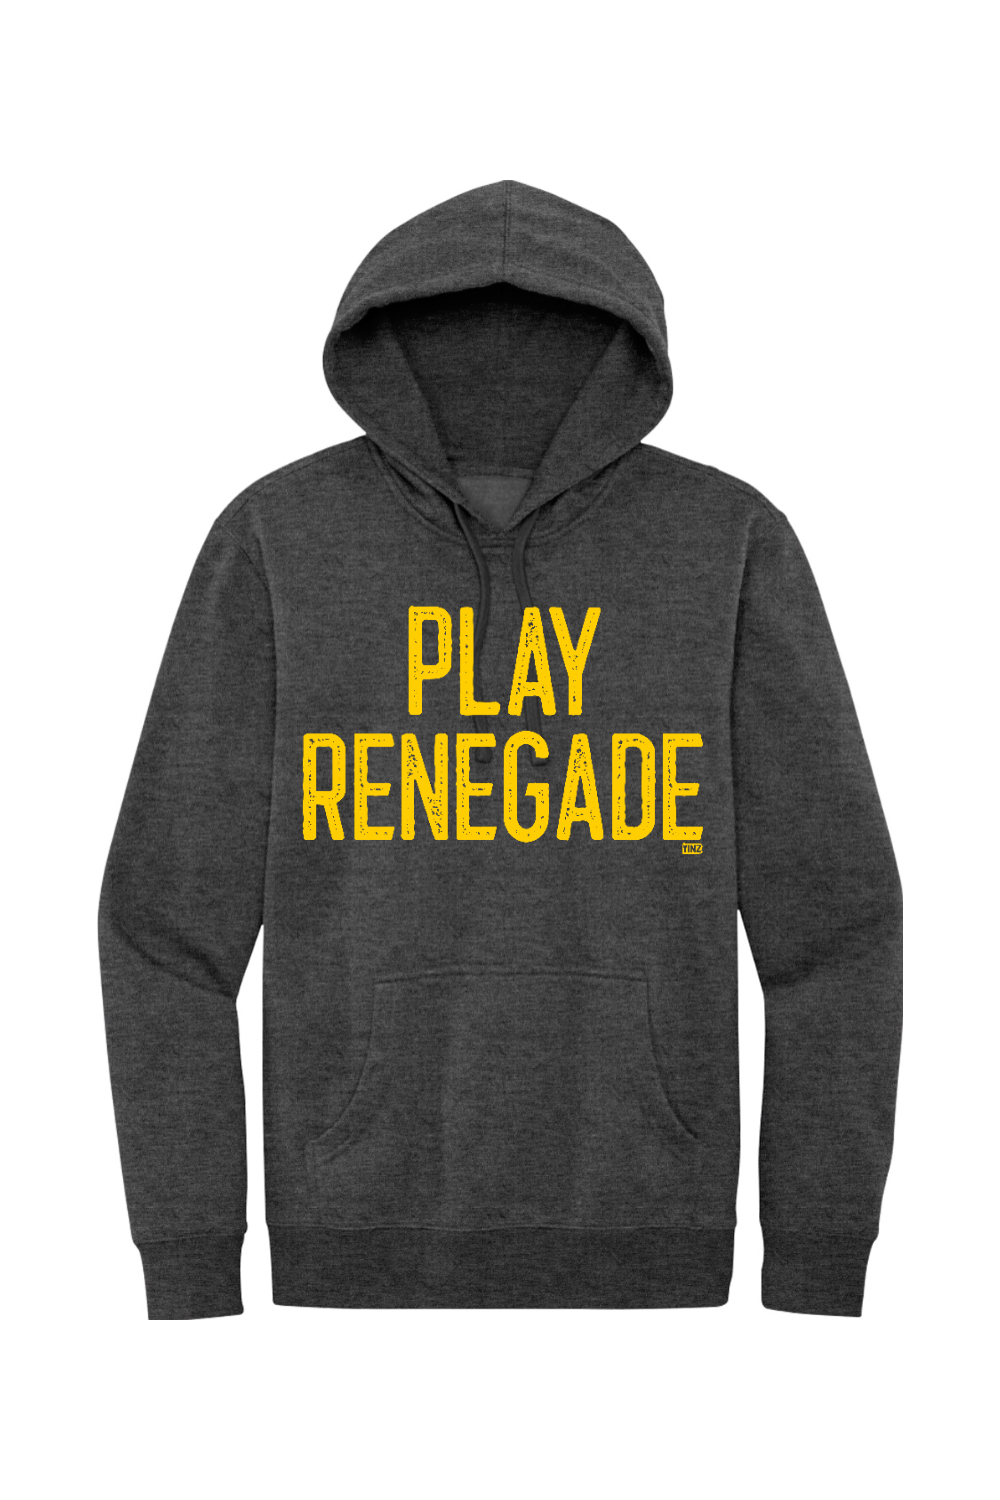 Play Renegade - Fleece Hoodie - Yinzylvania